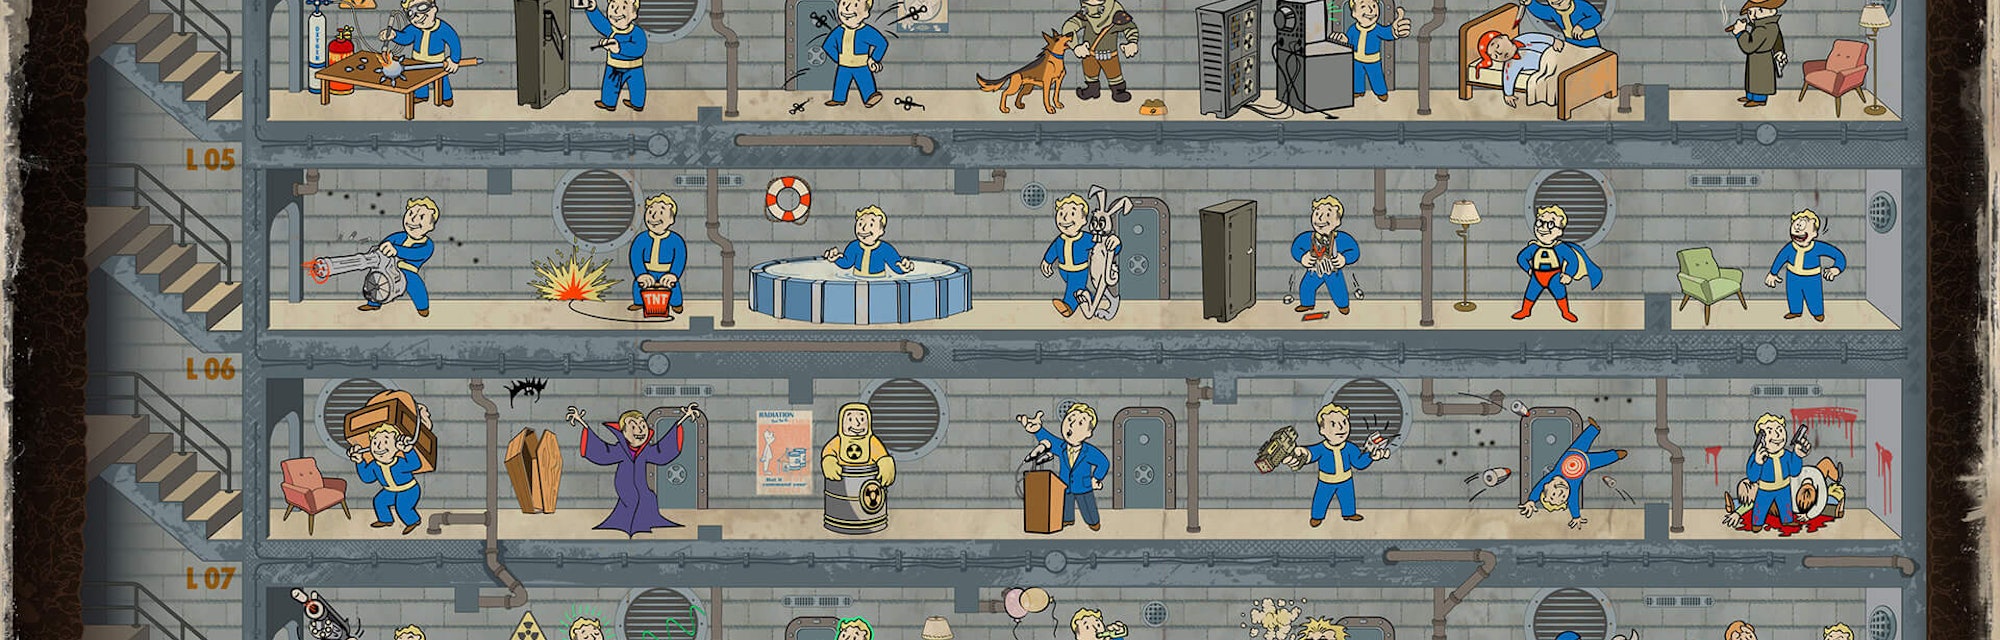 Fallout 4 зачищено что значит фото 111